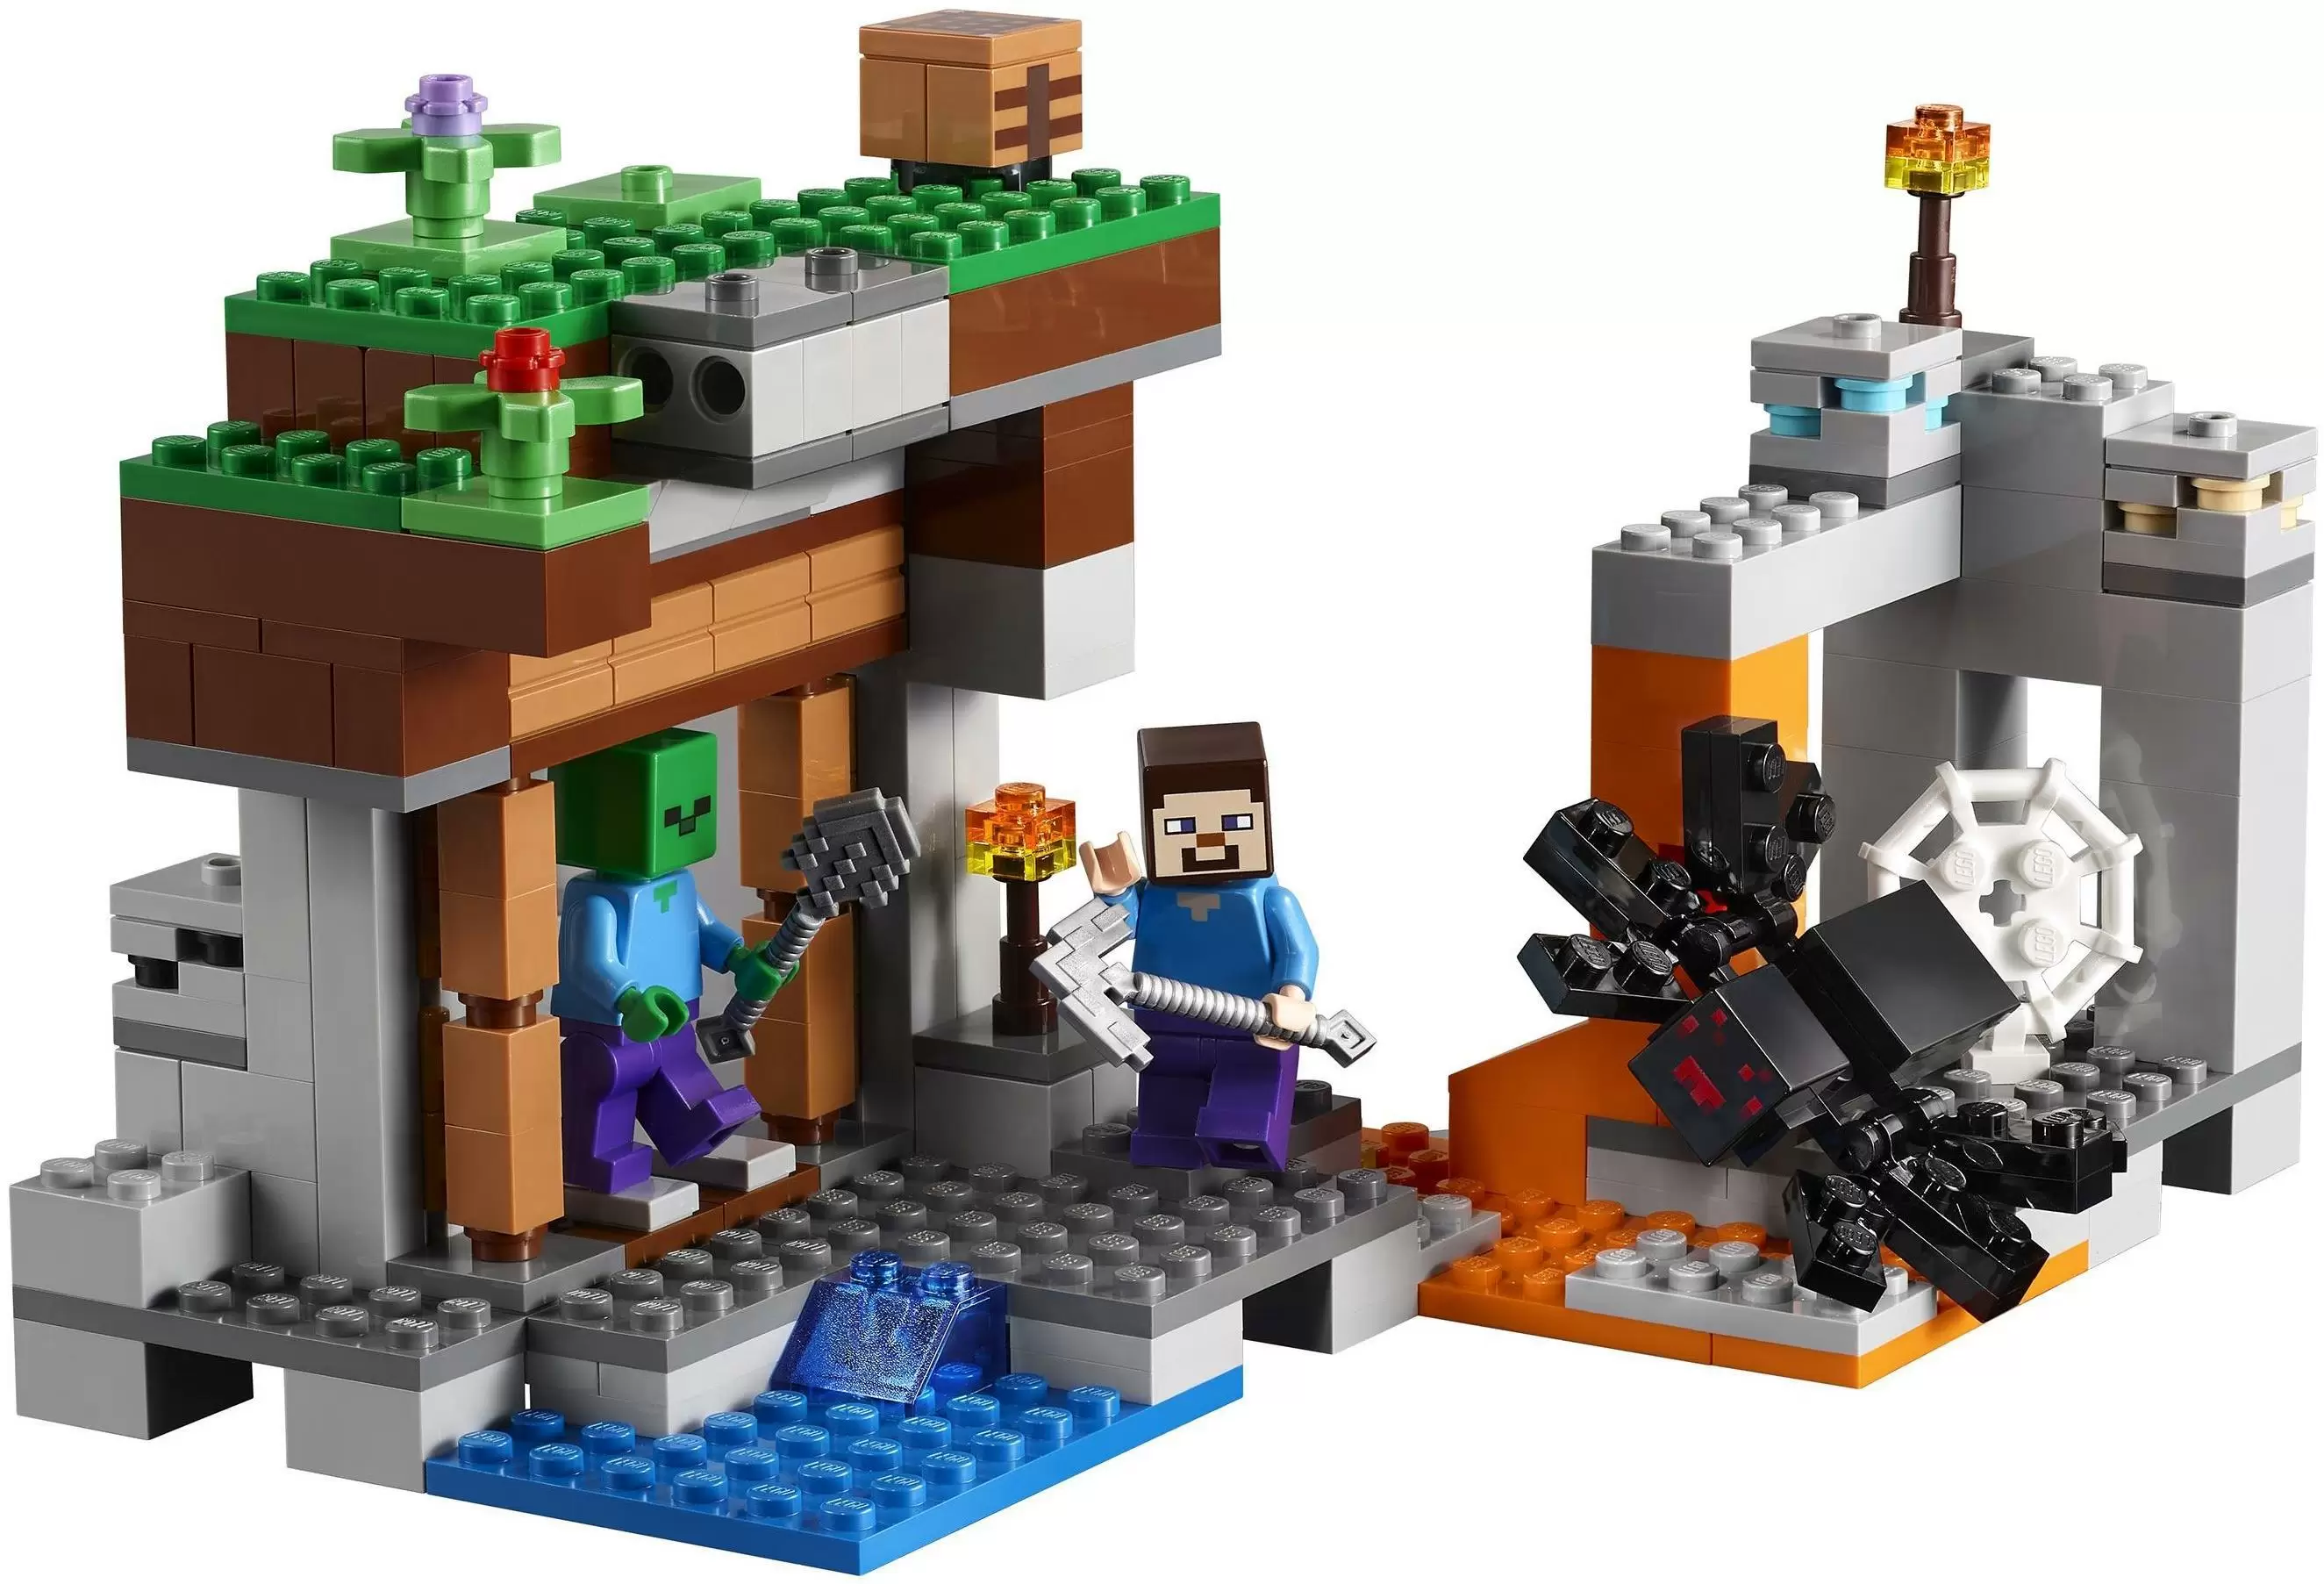 Конструктор LEGO Minecraft Заброшенная шахта